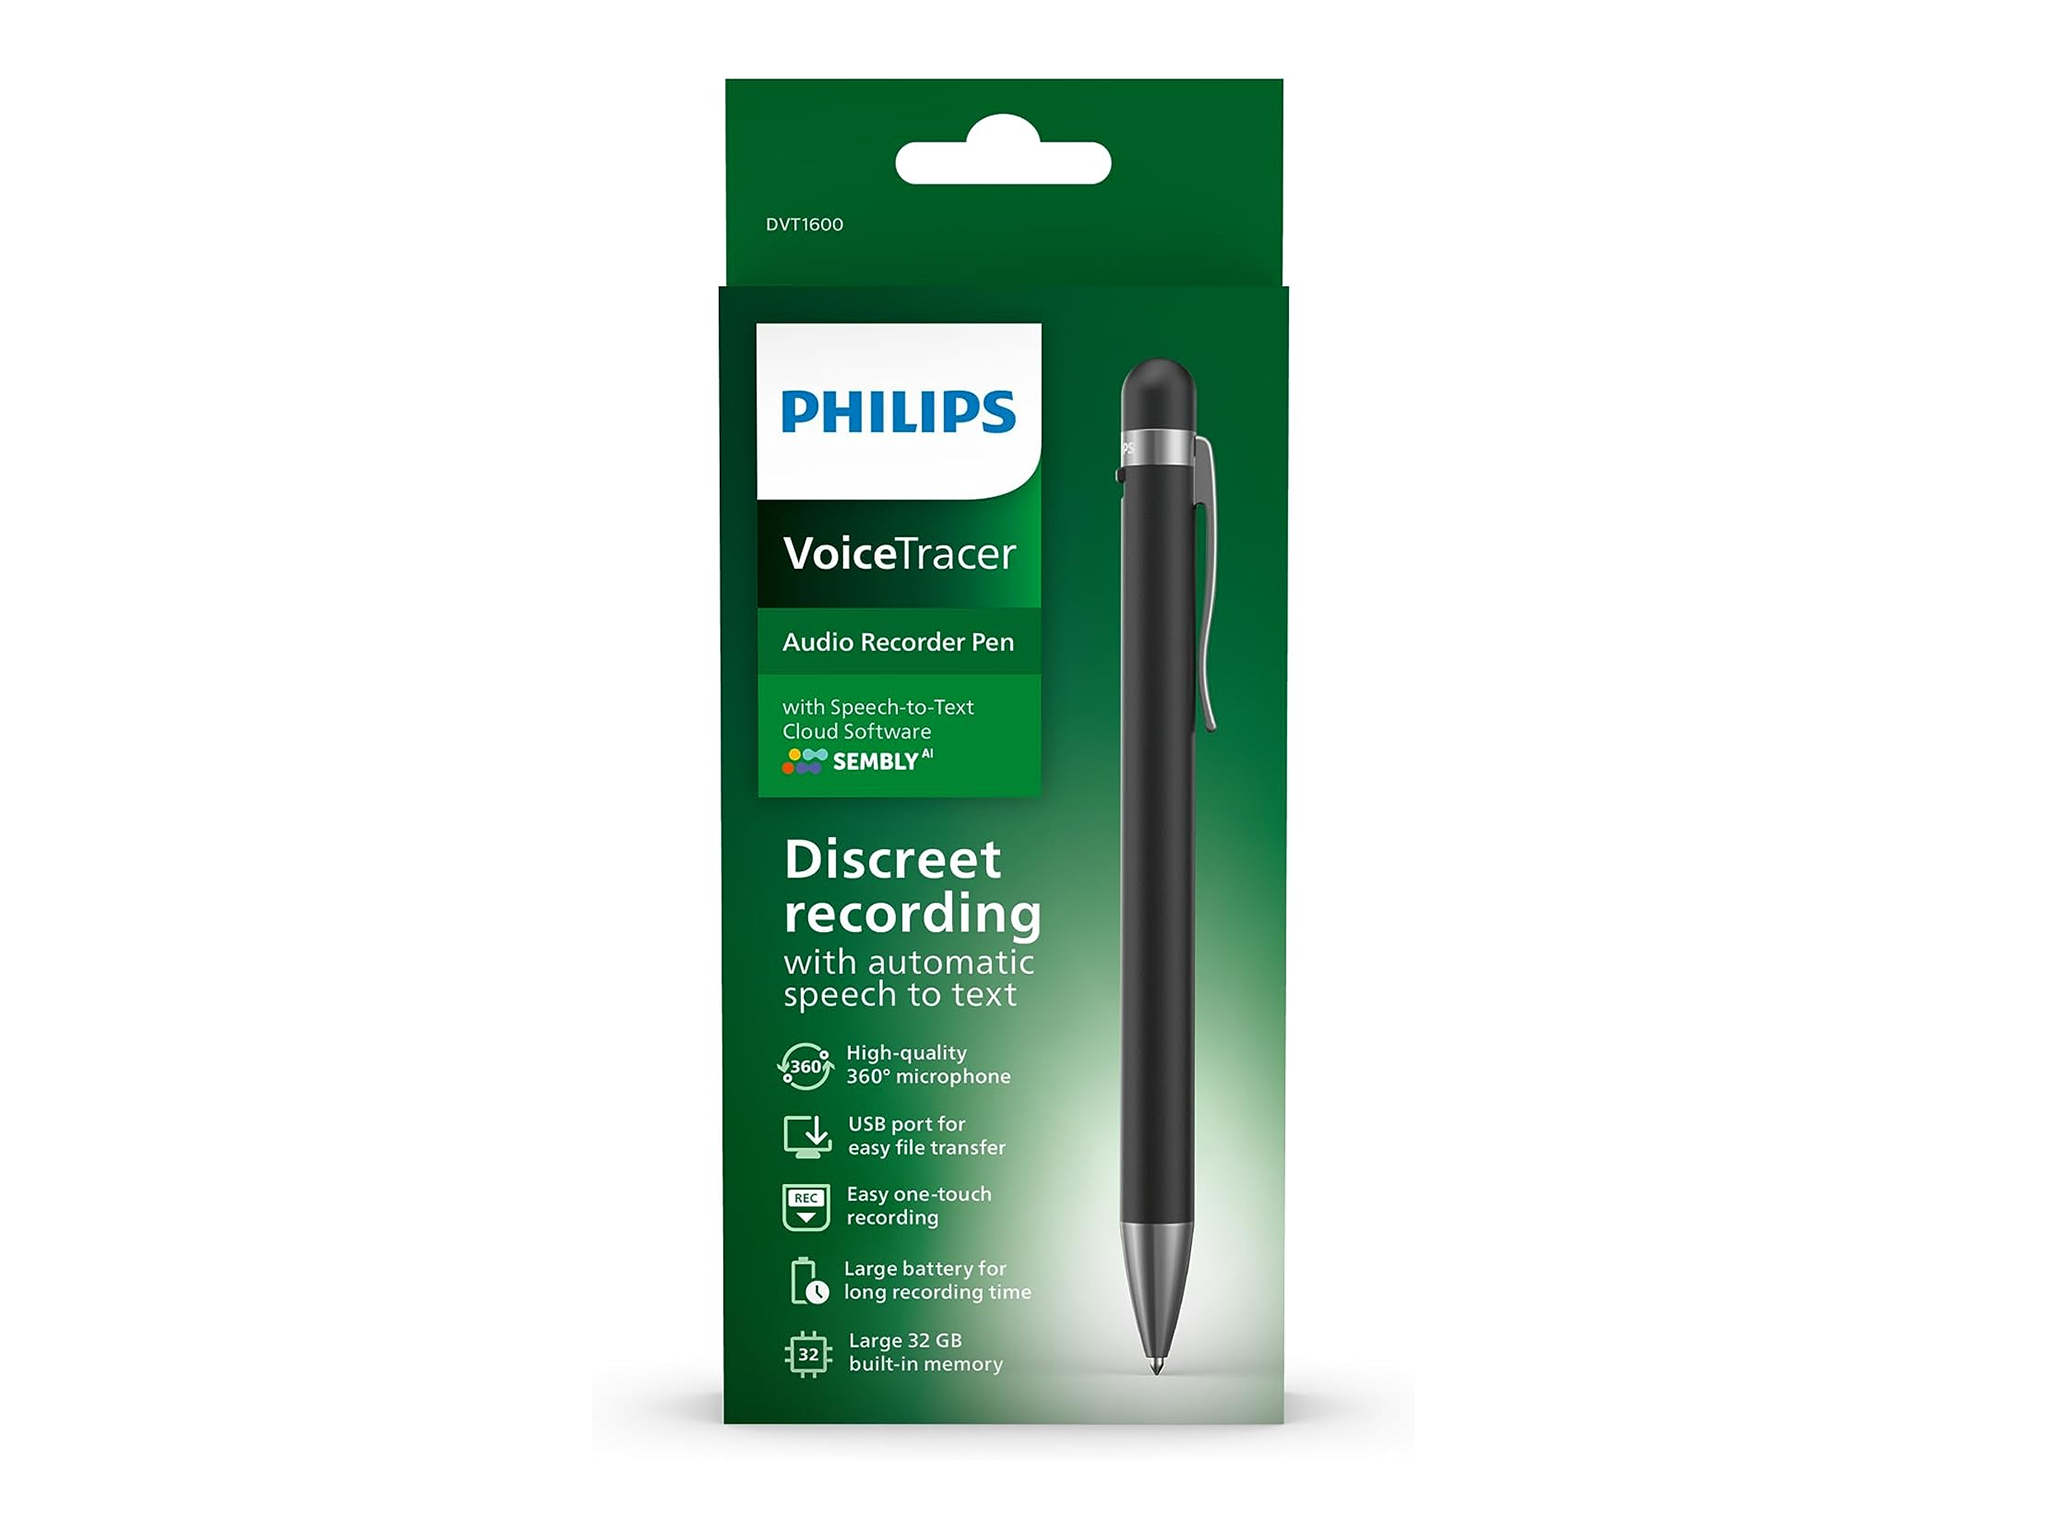 Philips VoiceTracer pen